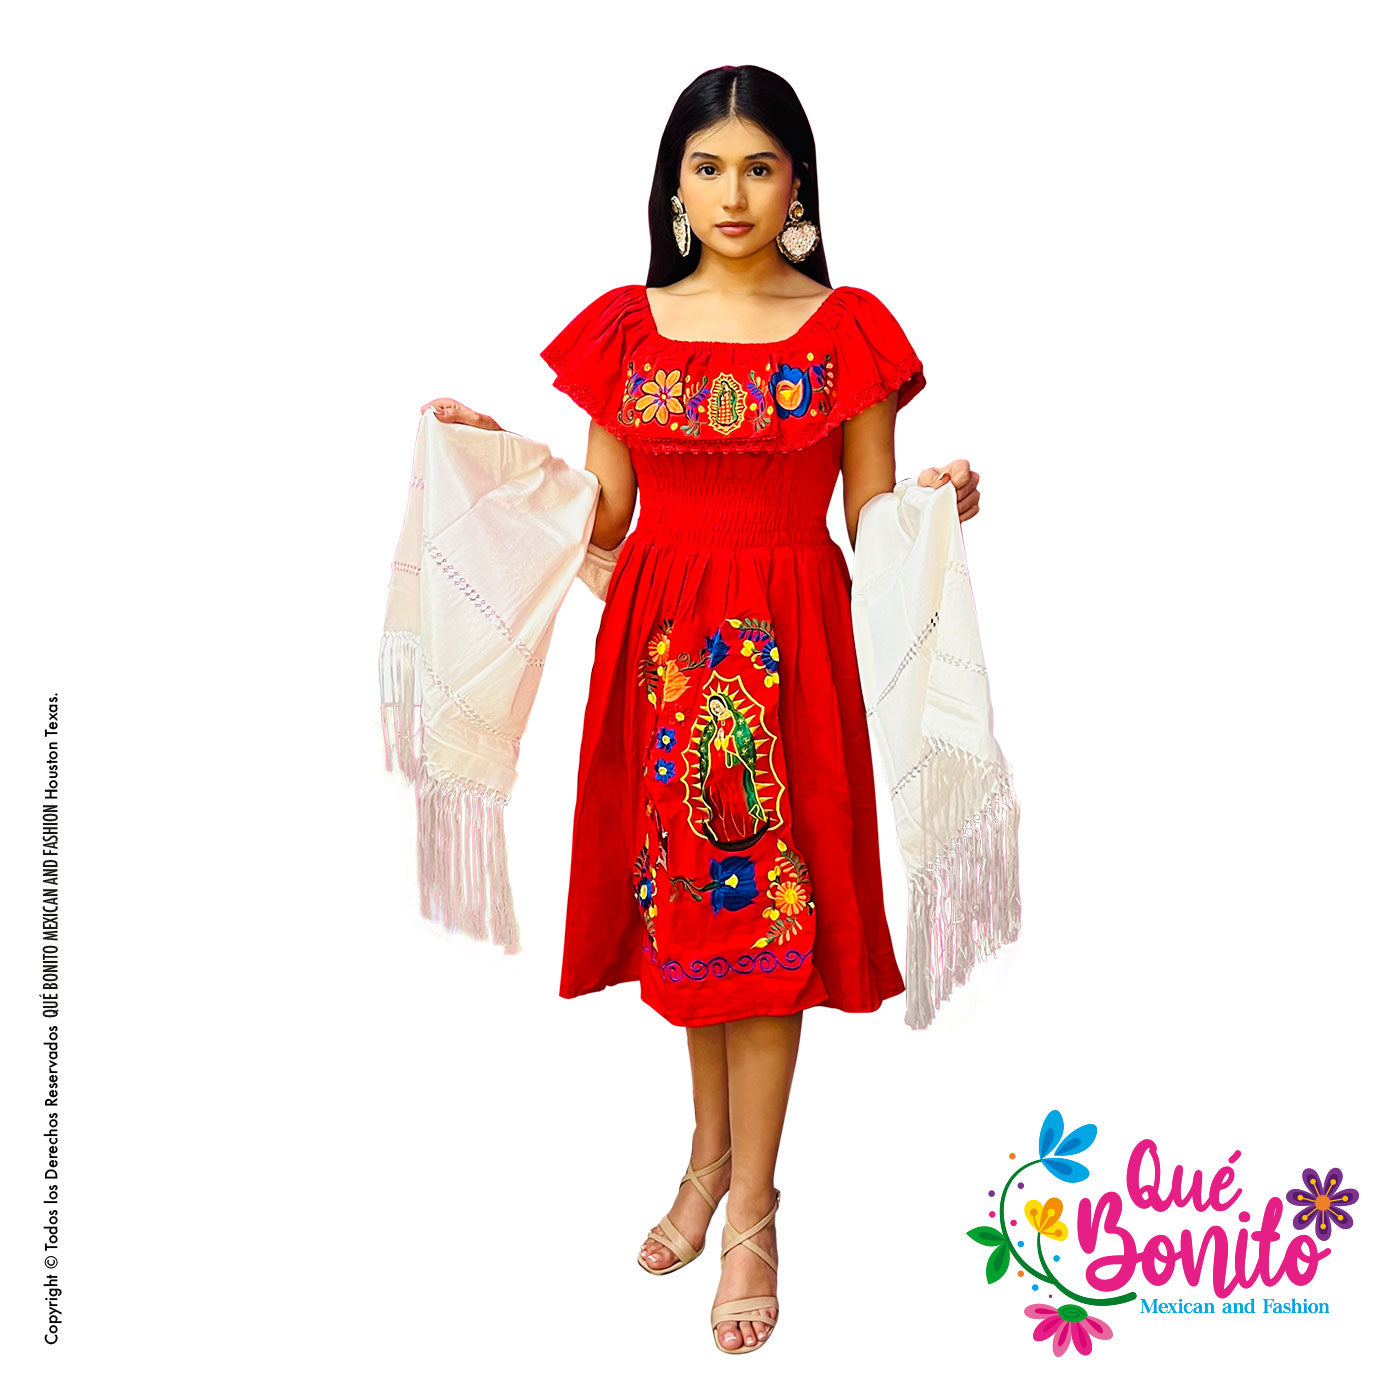 Virgen de Guadalupe Kimona Dress Que Bonito Mexican and Fashion